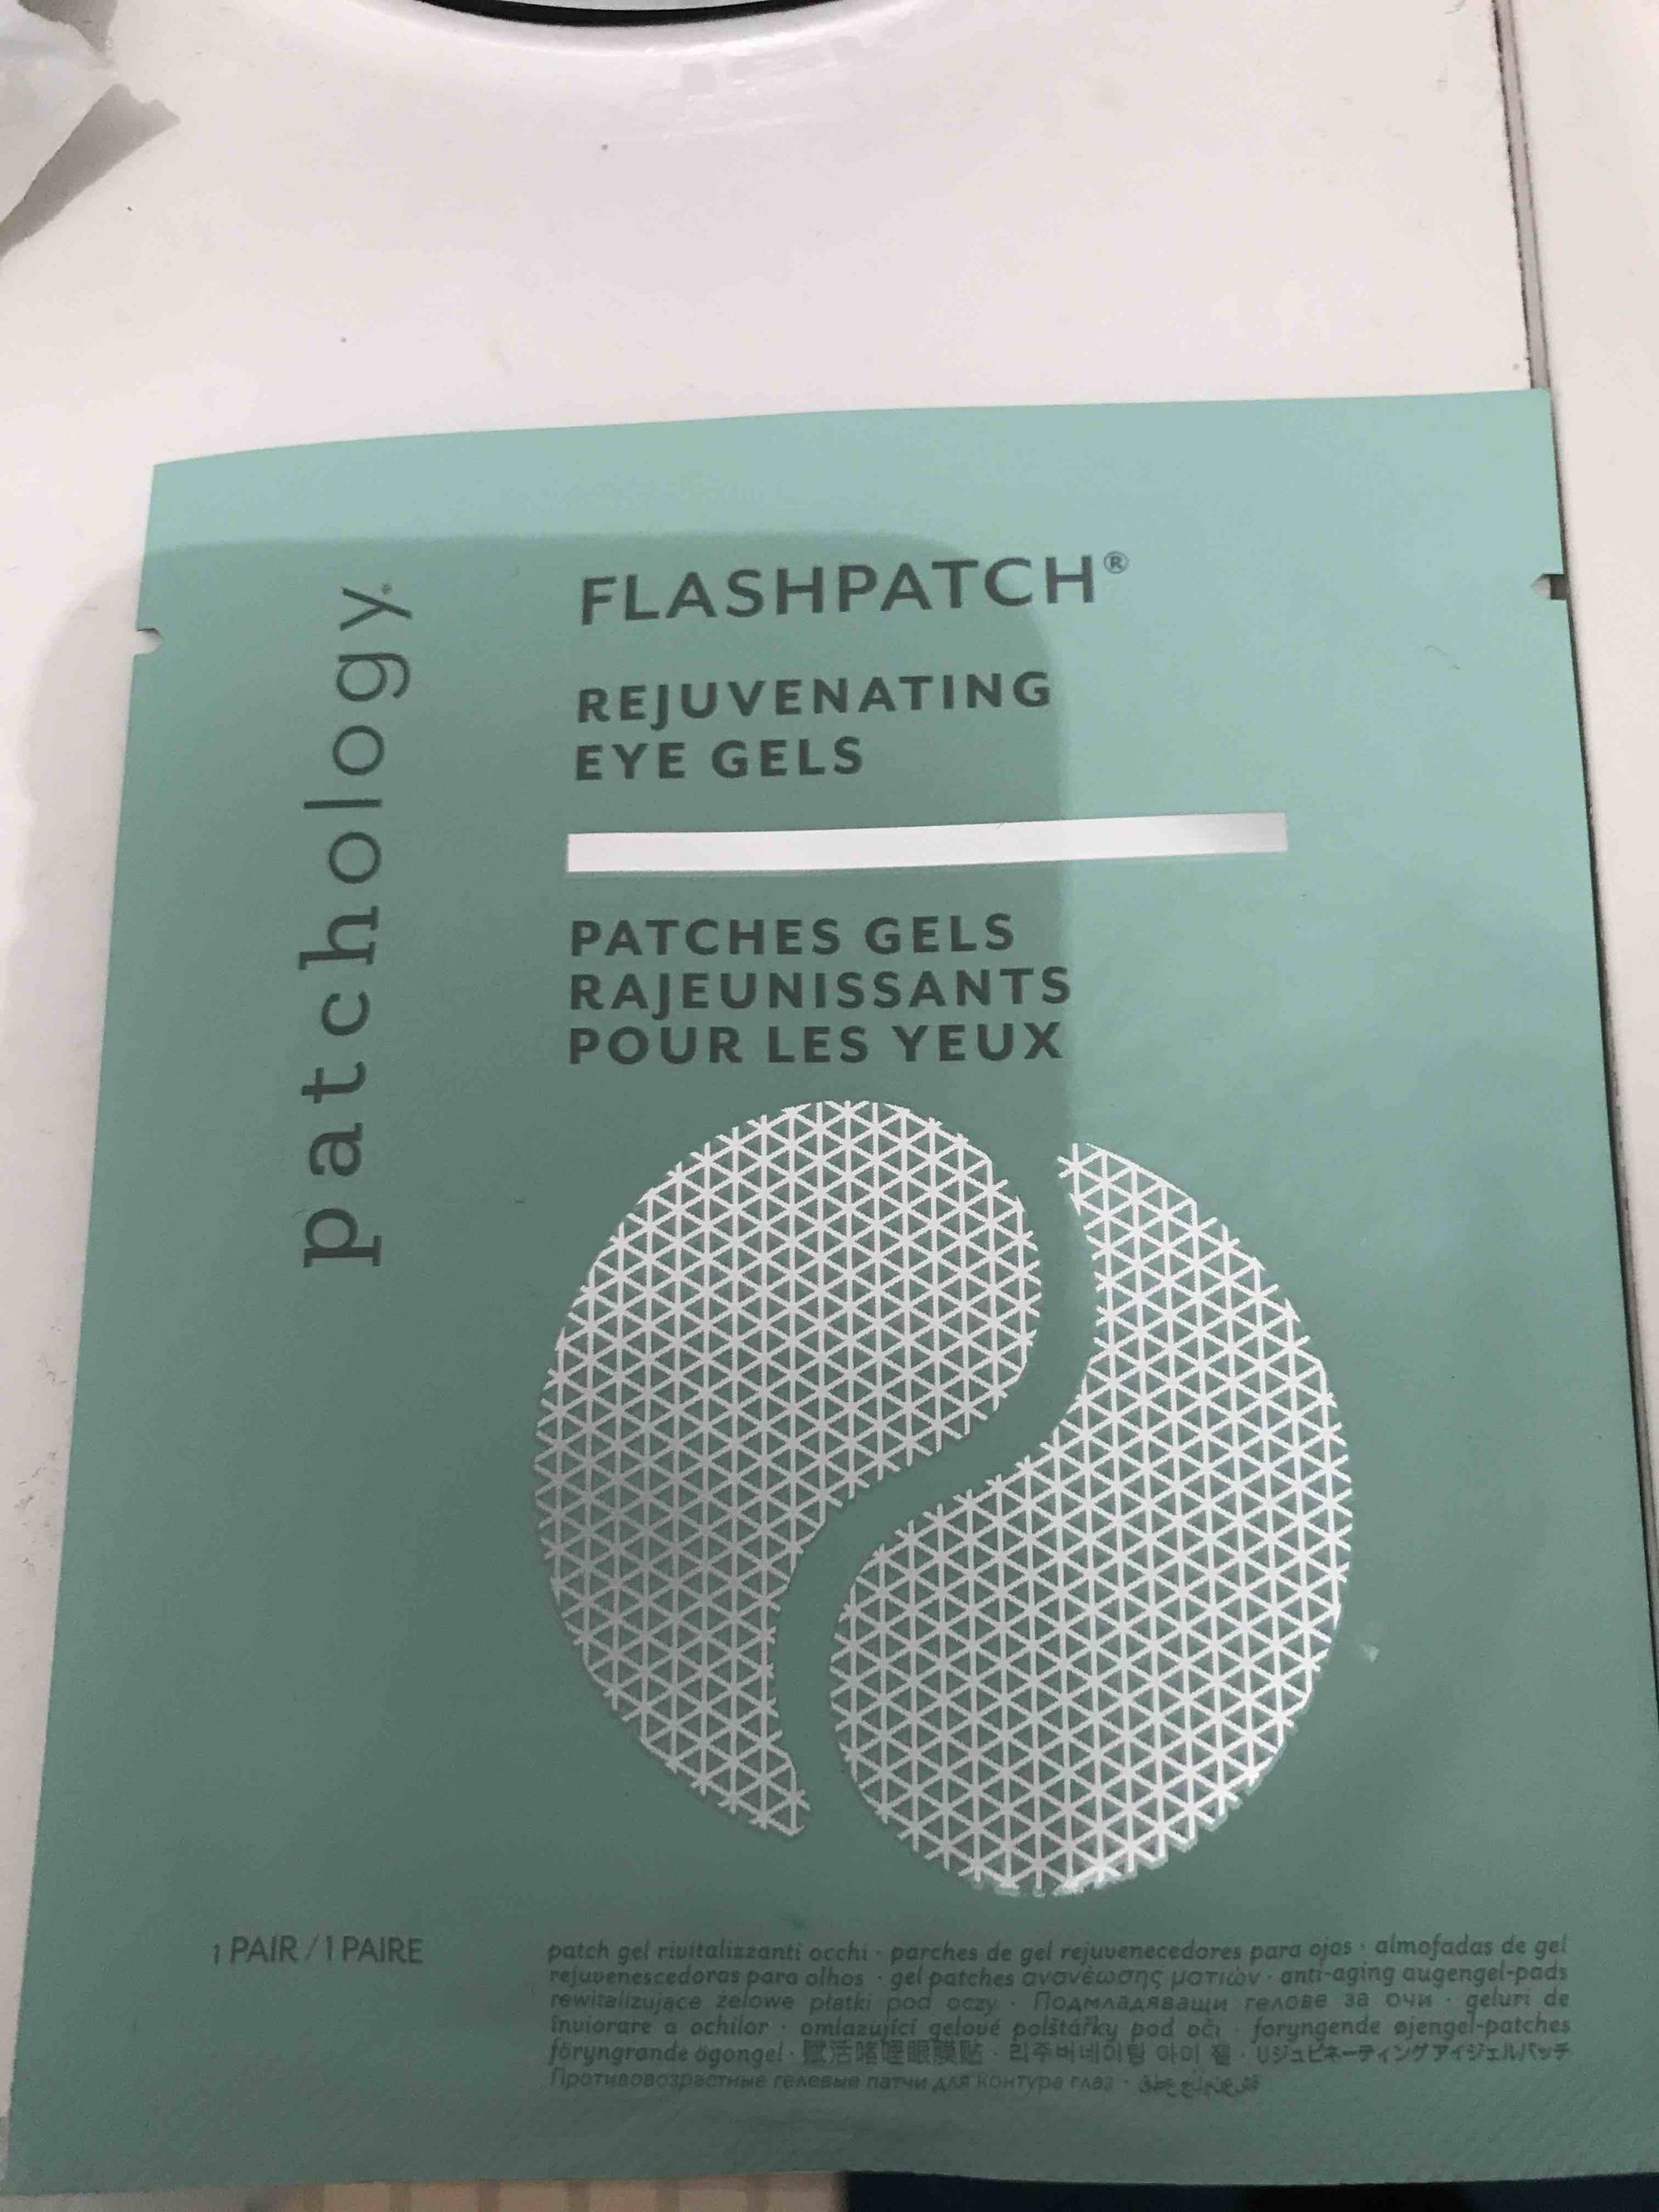 PATCHOLOGY - Flashpatch - Rejuvenating eye gels